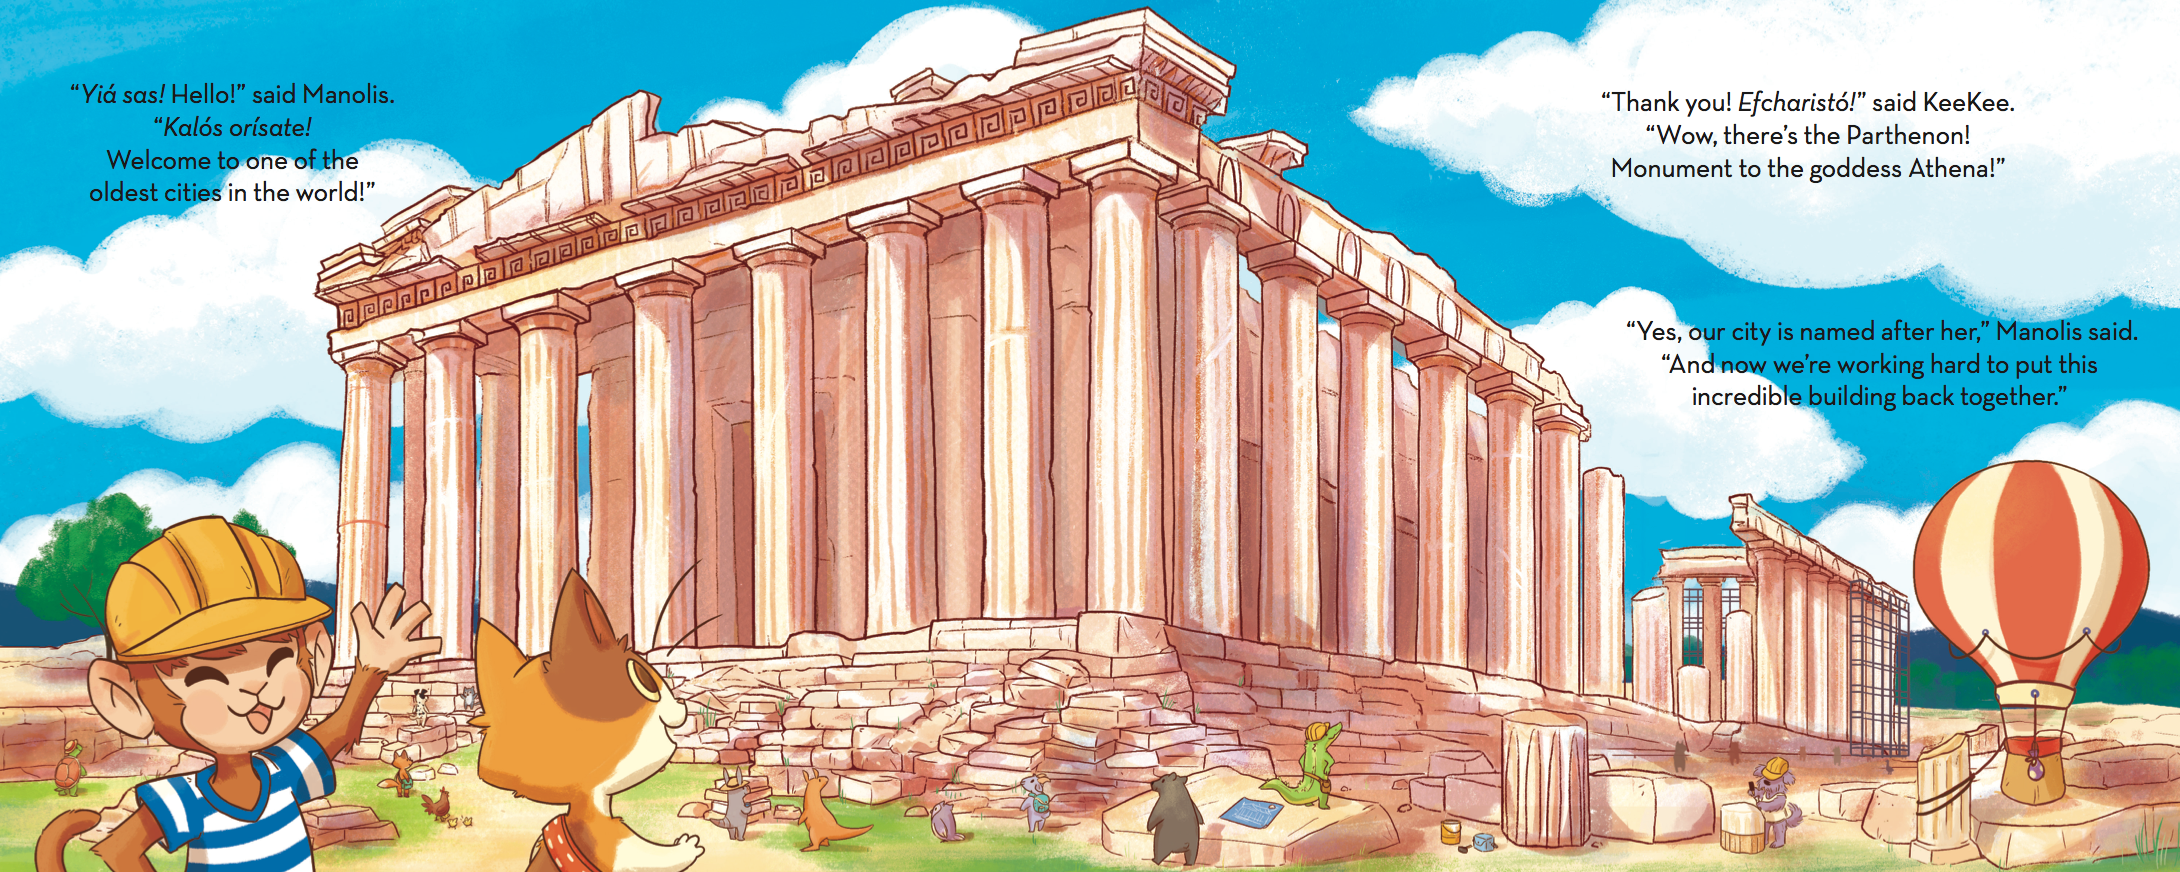 KKBA_Athens_Parthenon